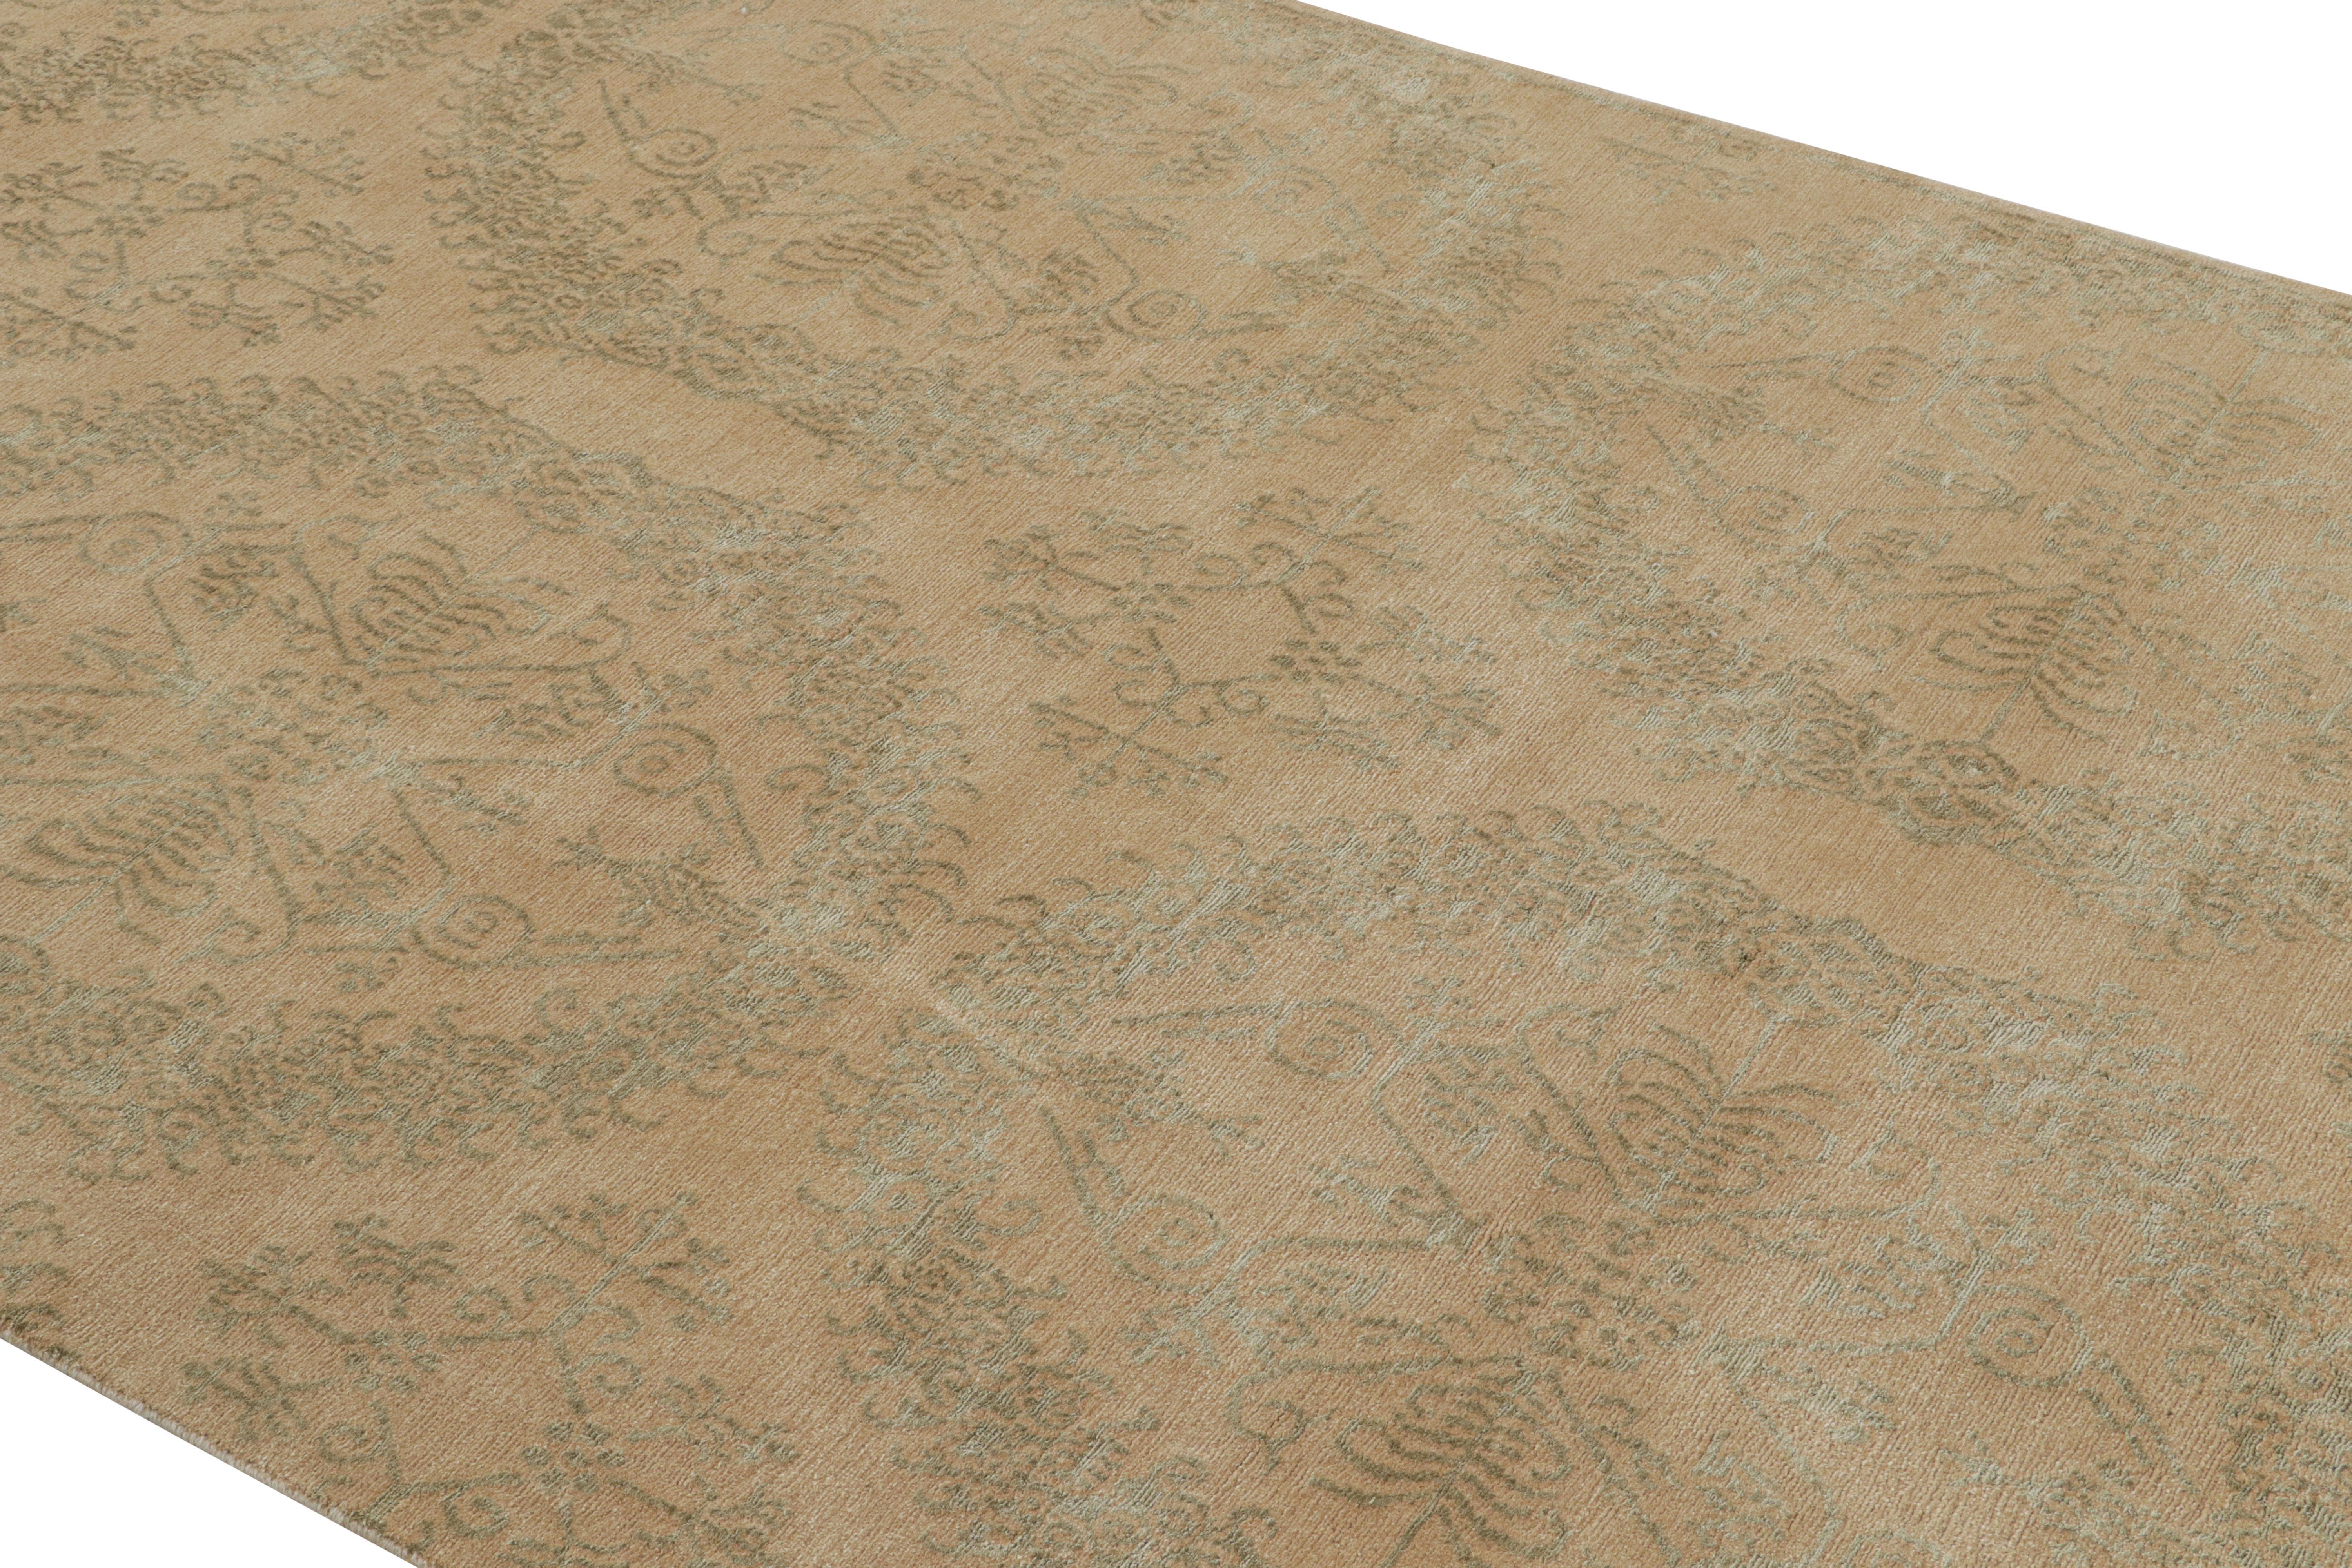 Dieser 5 x 10 große, handgeknüpfte Teppich aus einer Mischung aus Wolle und Seide gehört zur europäischen Teppichkollektion von Rug & Kilim und ist von einem Teppichmuster aus dem 18. Jahrhundert inspiriert, das in Form von schimmernden grünen